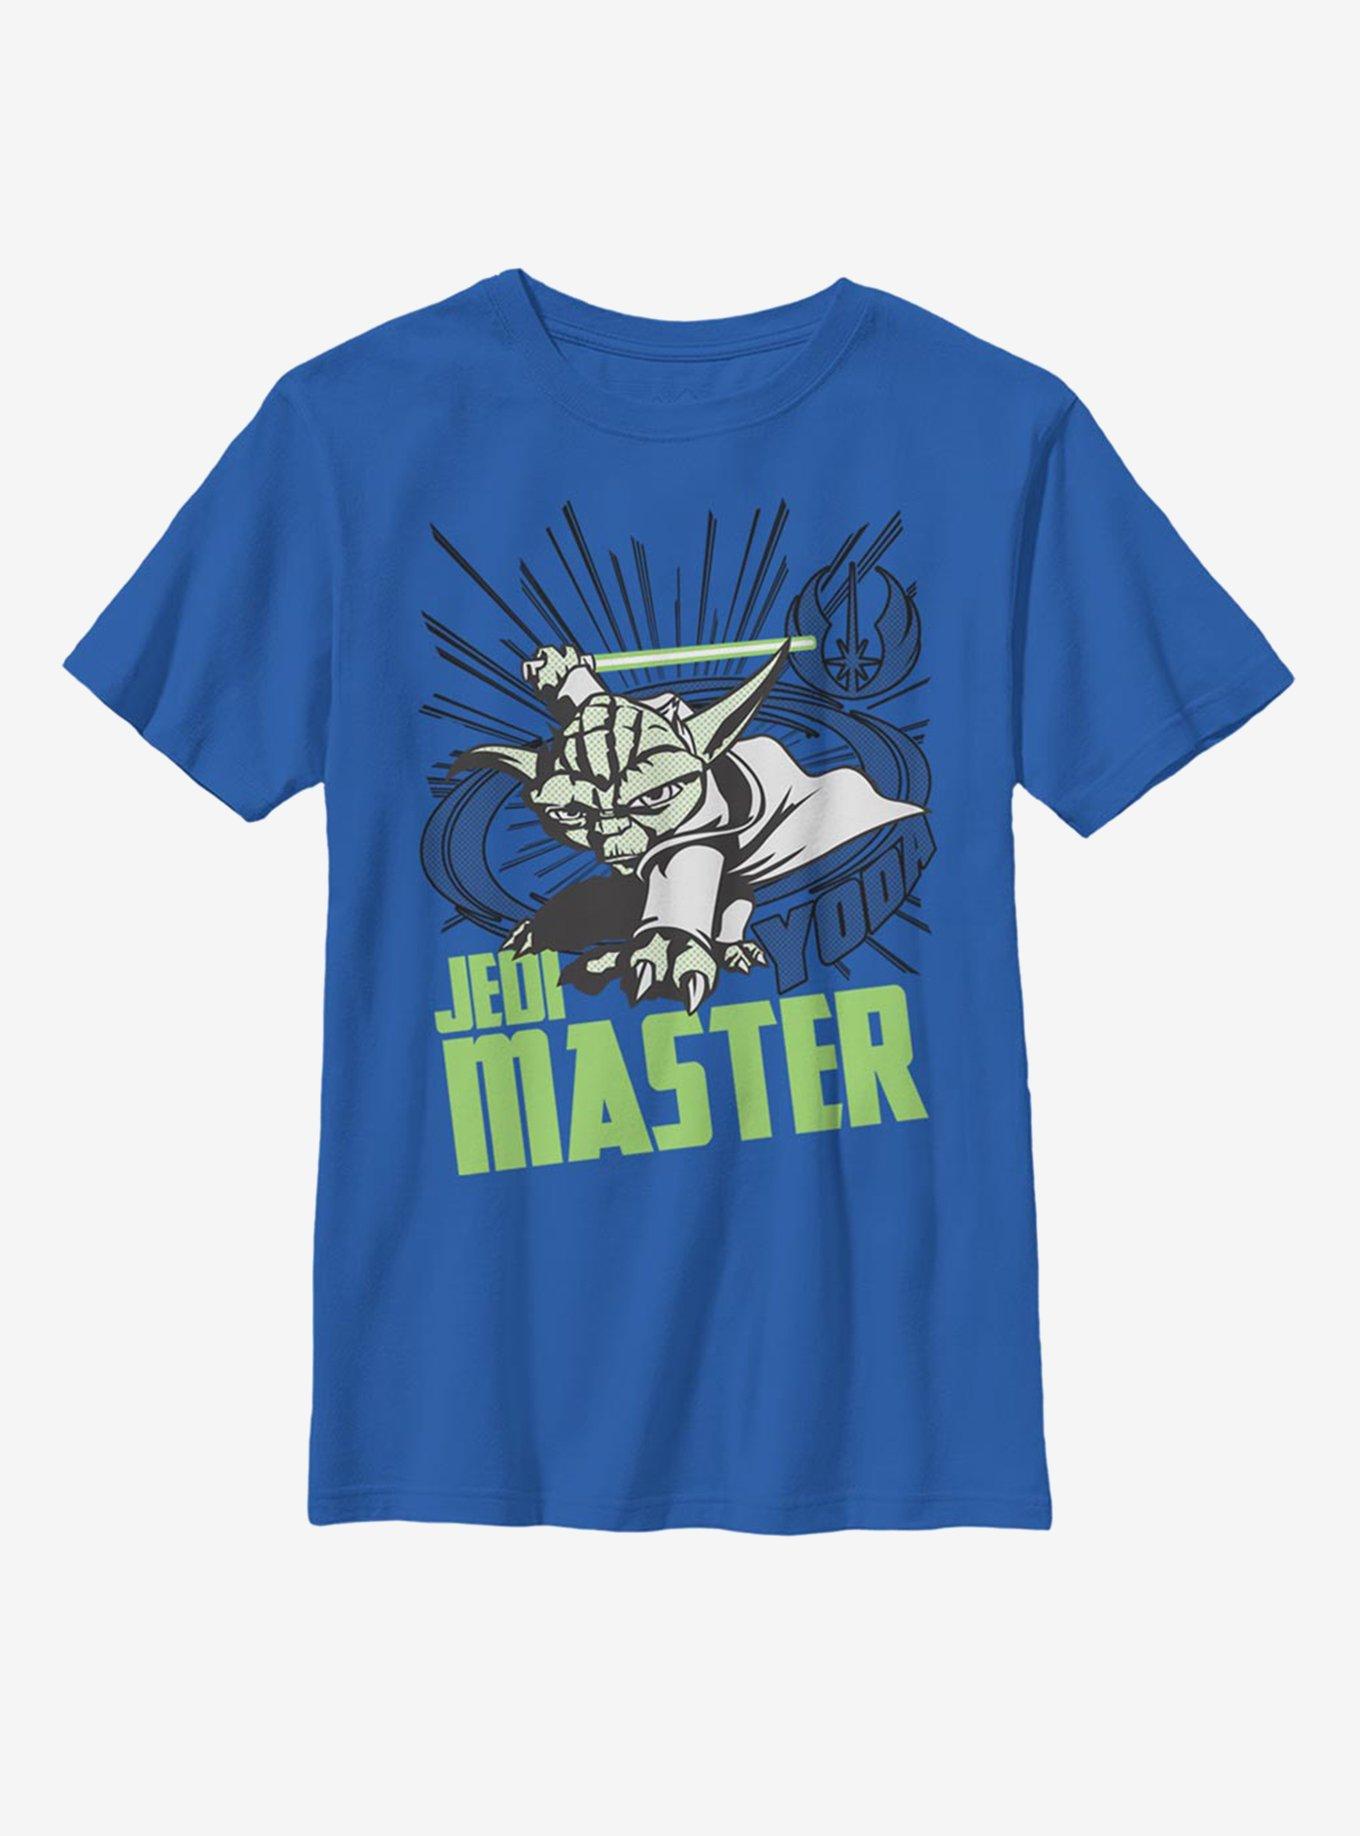 Star Wars: The Clone Wars Yoda Master Youth T-Shirt, , hi-res